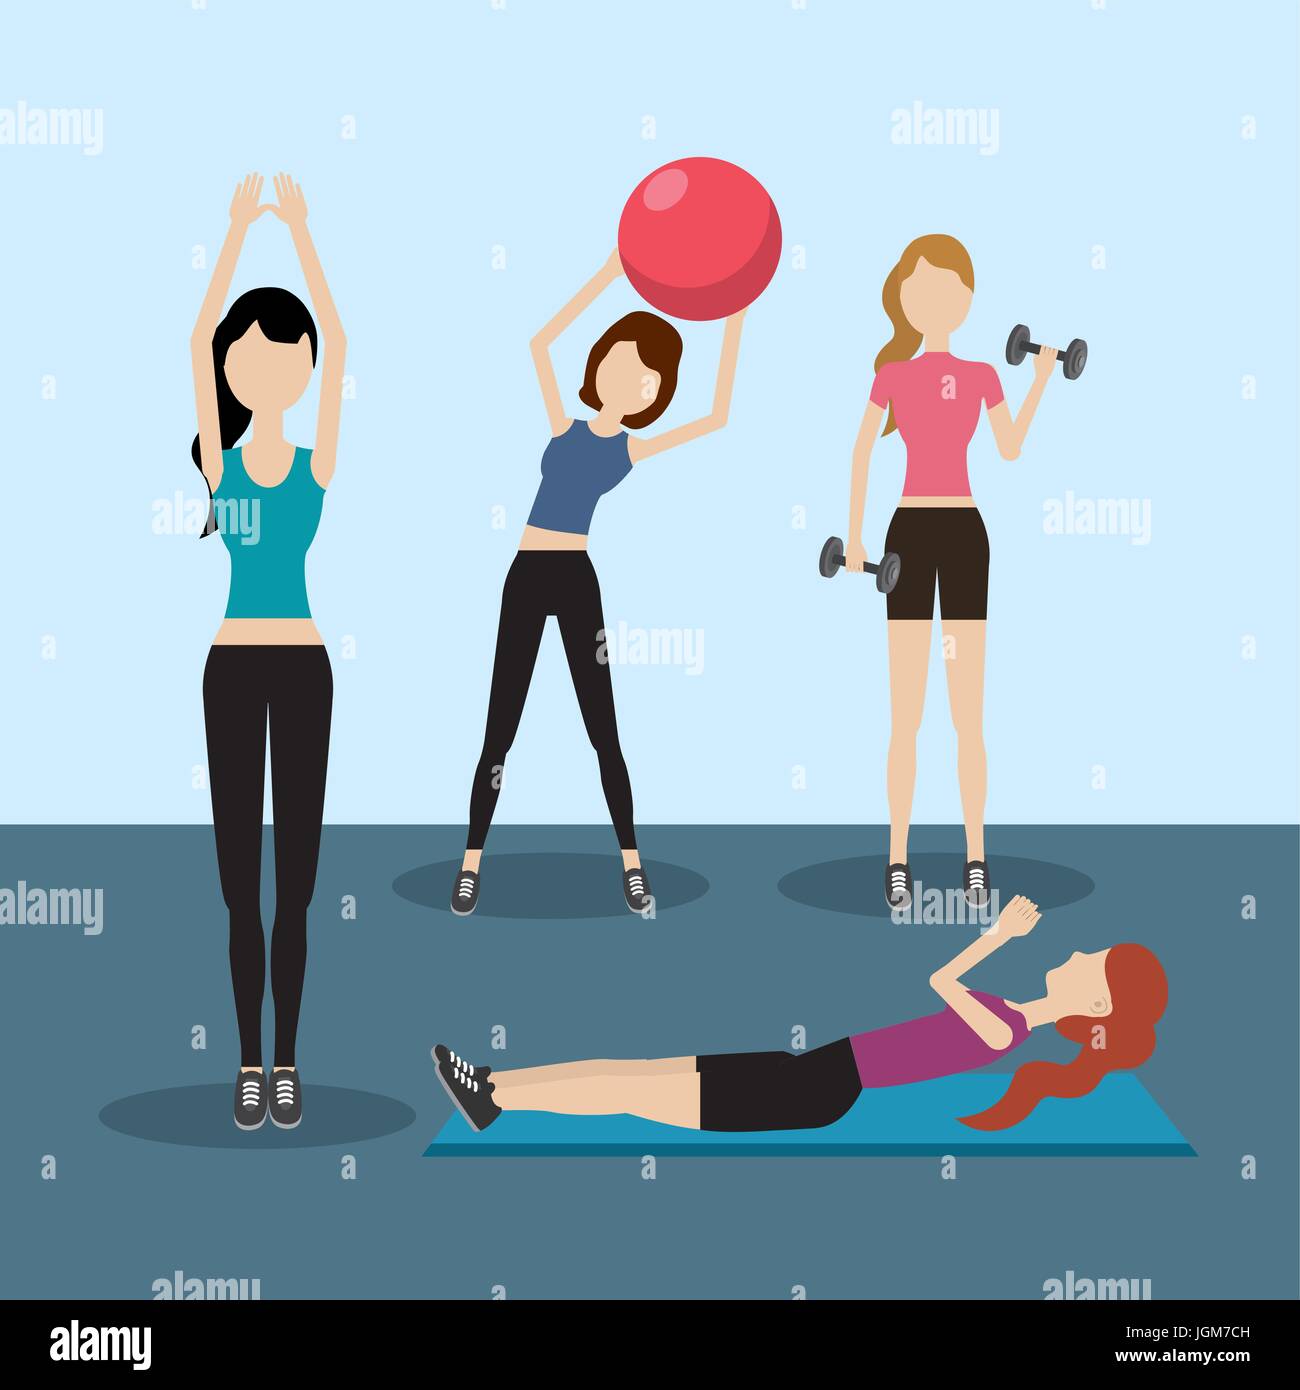 Silueta de Mujer haciendo ejercicio en casa Stock Photo